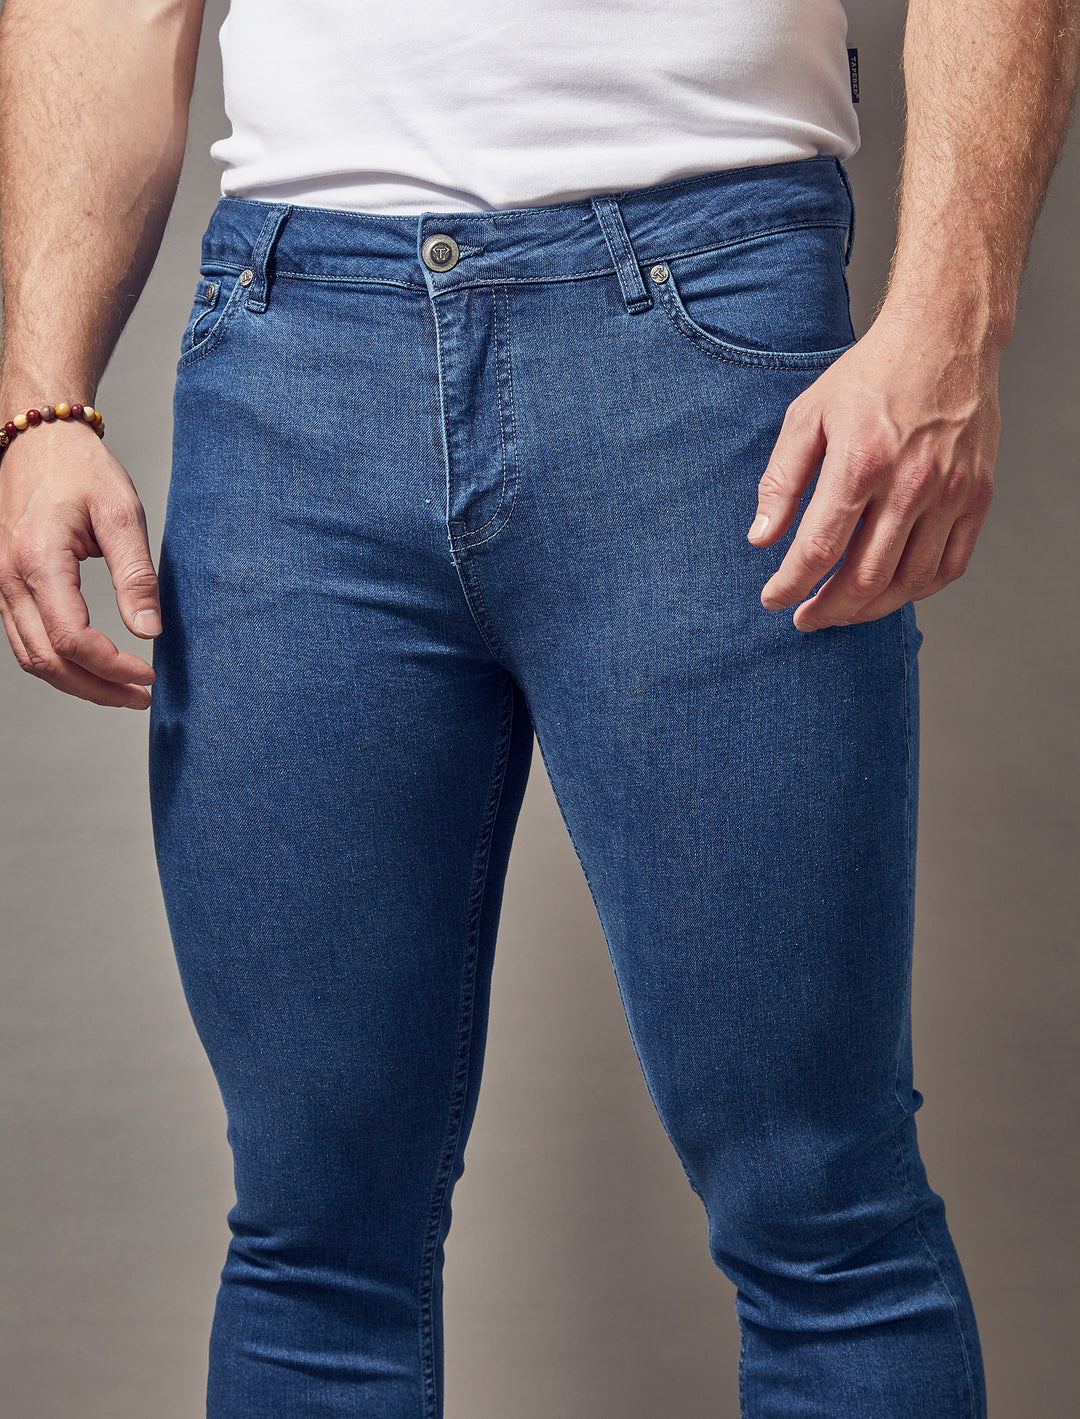 https://taperedmenswear.com/cdn/shop/files/mid-blue-tapered-fit-jeans.jpg?v=1698955859&width=1080